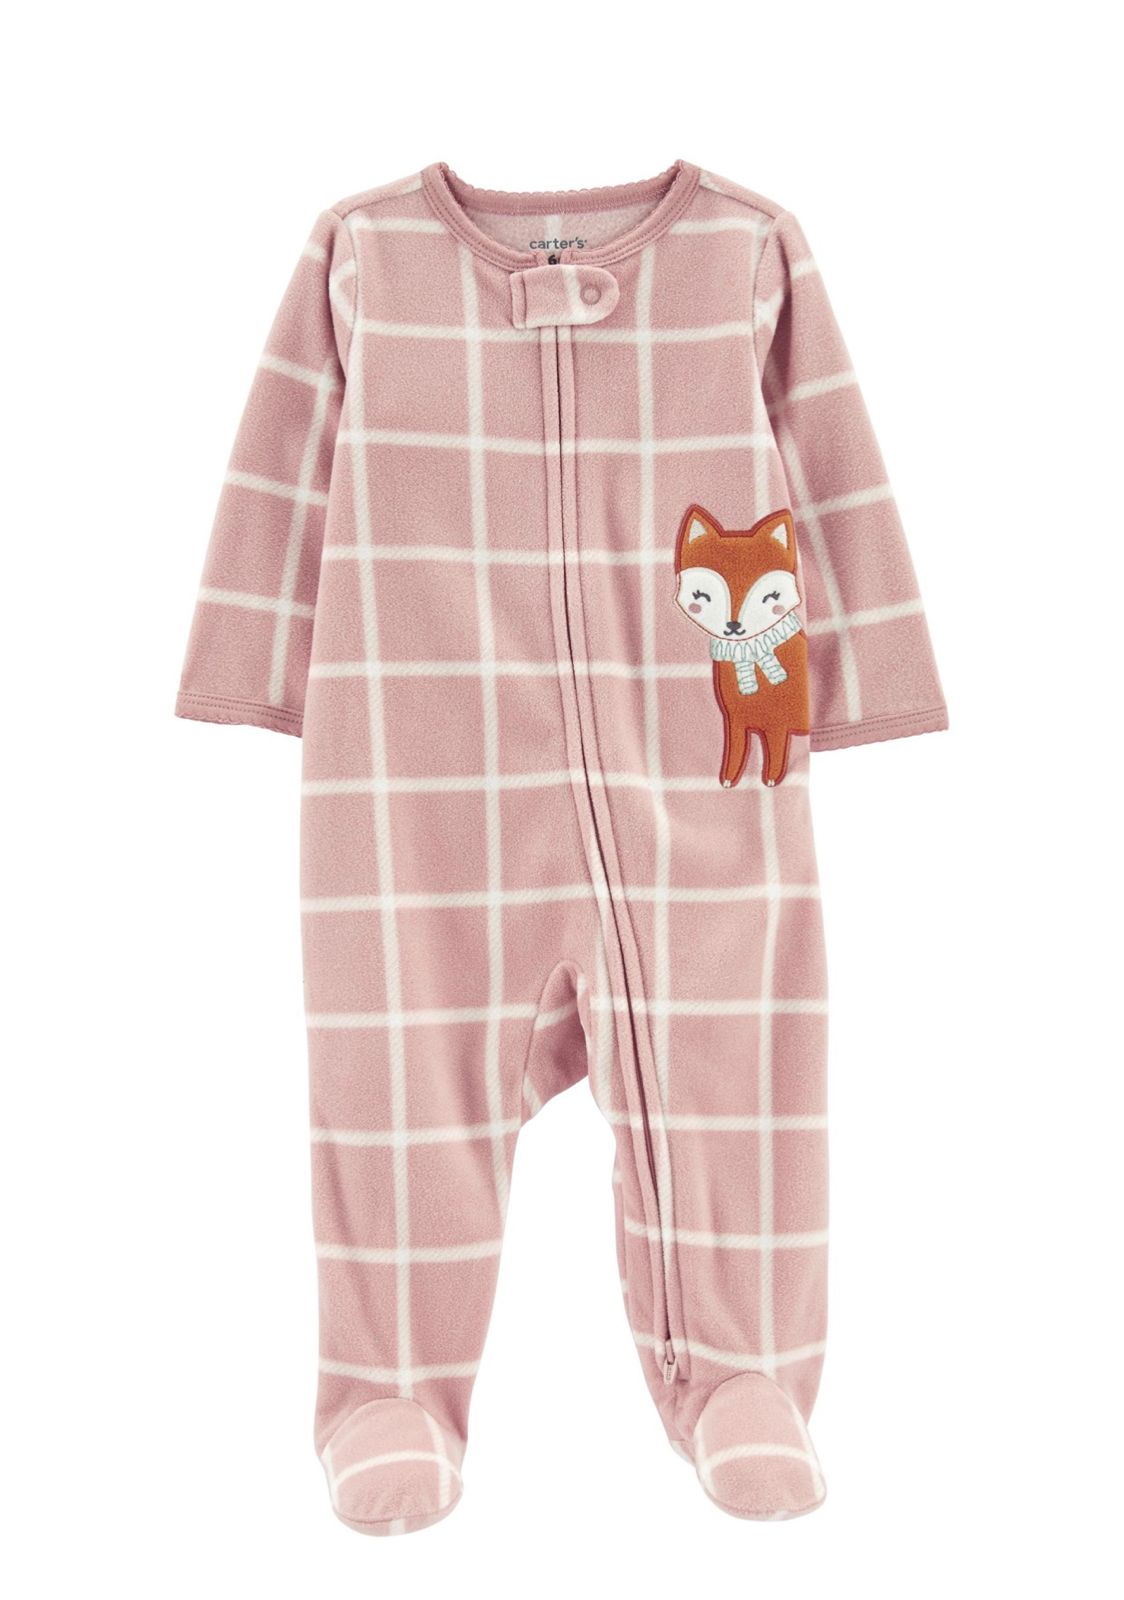 Carter's Appliqued Fox Fleece Sleepsuit